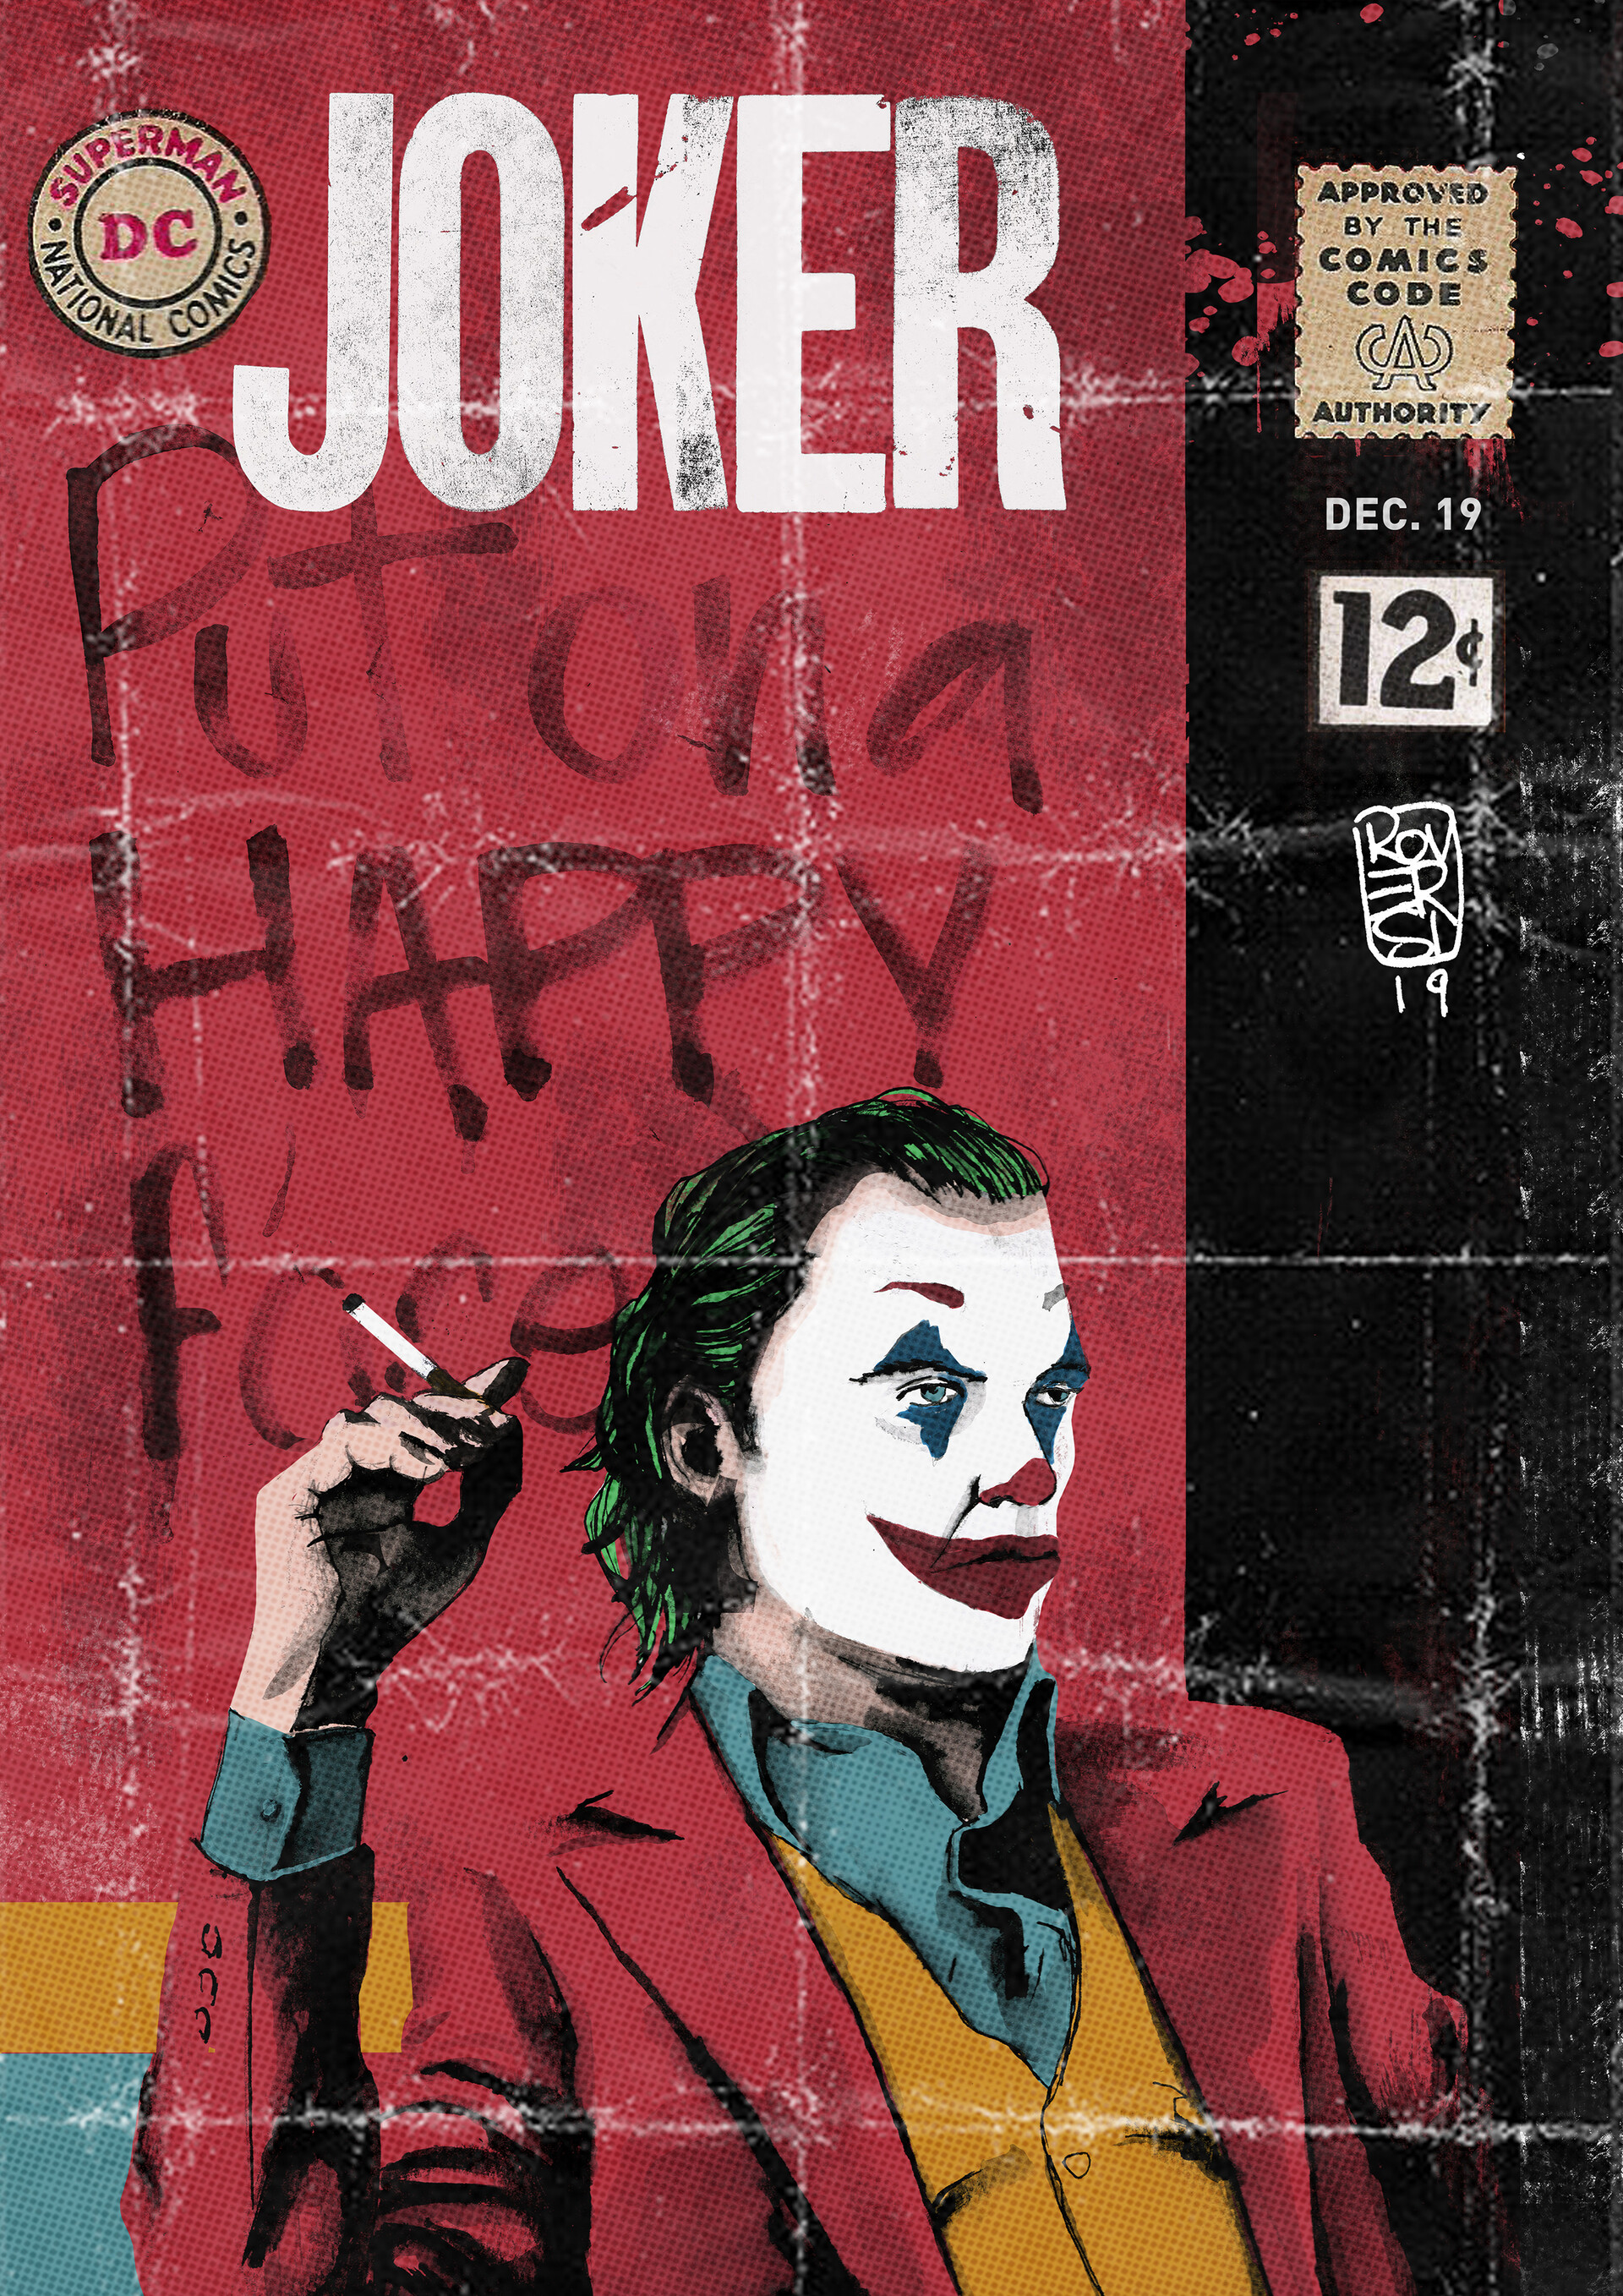 ArtStation - Joker Alternative Movie Poster